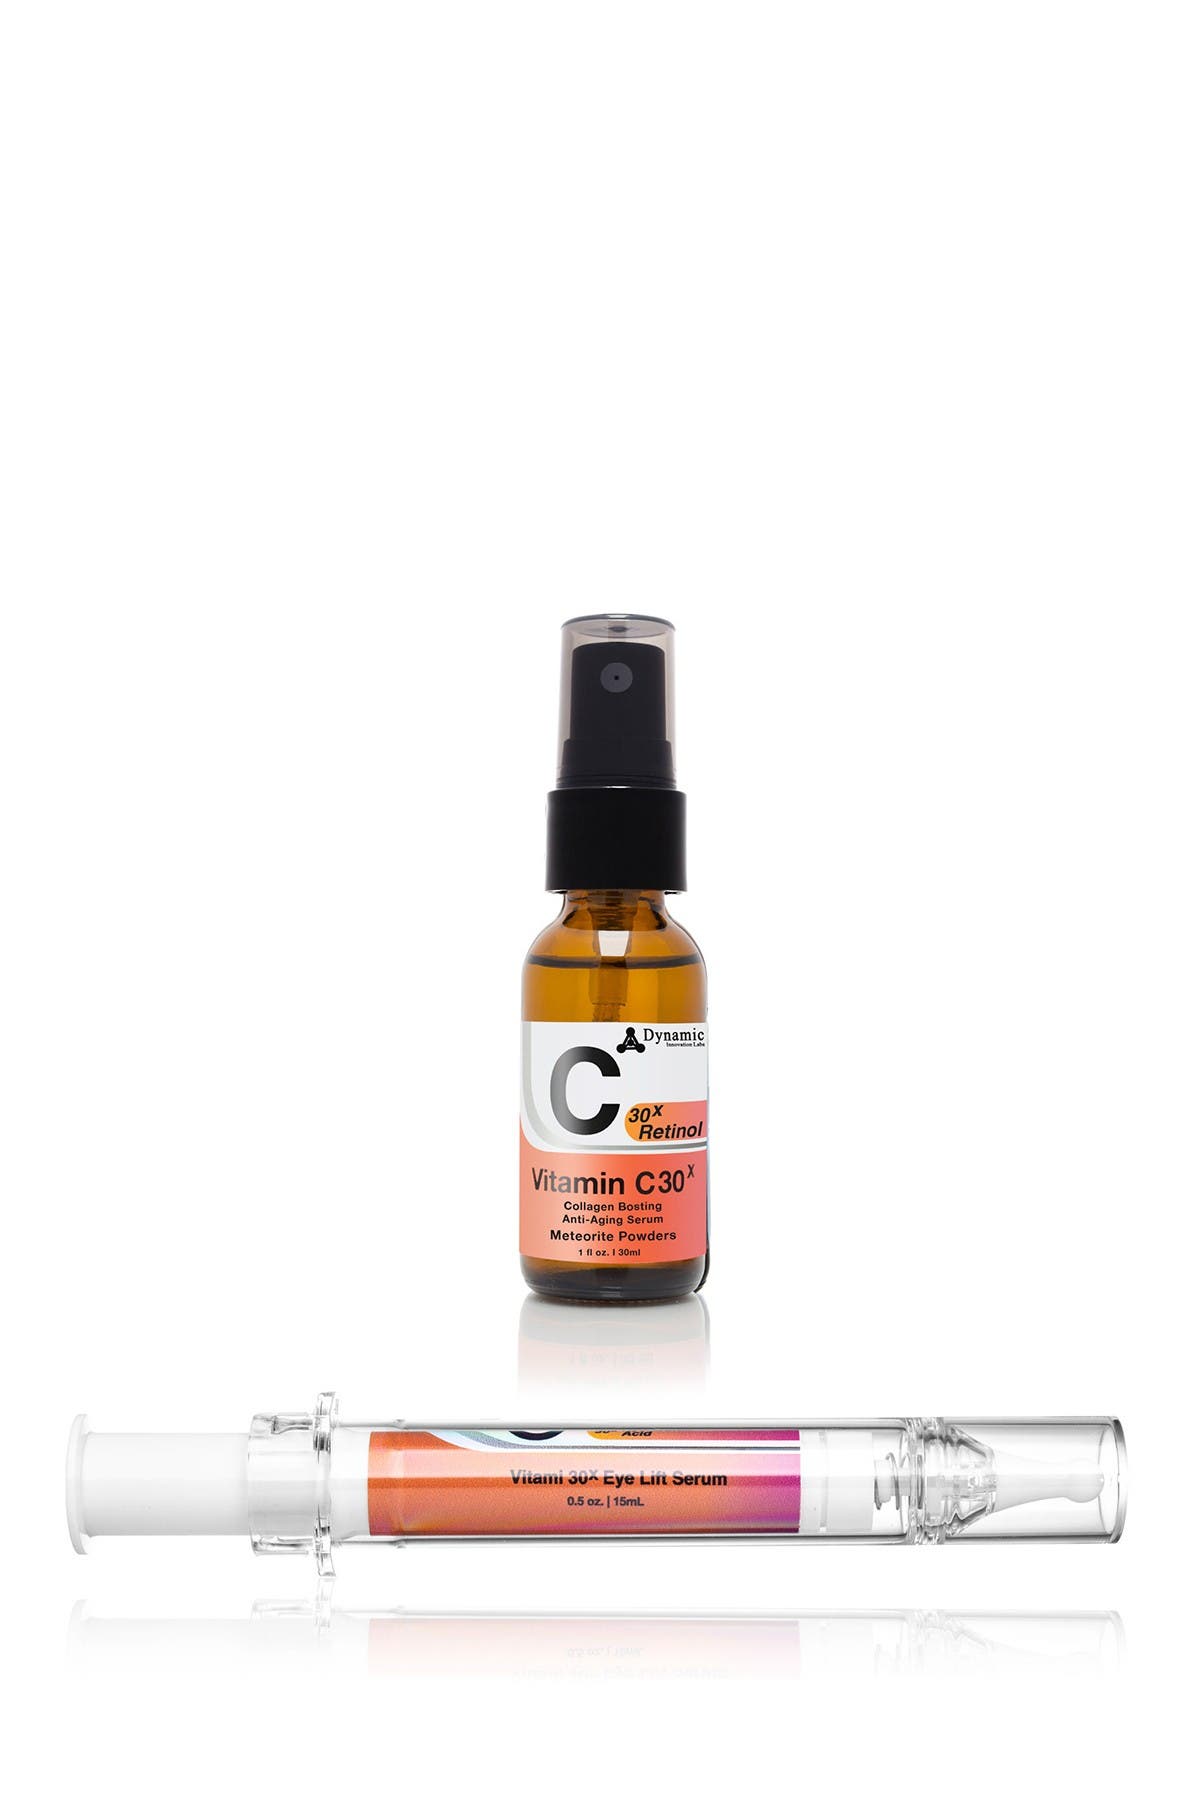 Yuka Skincare Vitamin C30x Collagen-boosting Anti-aging Serum + Hyaluronic Acid Eye Lift Serum Duo